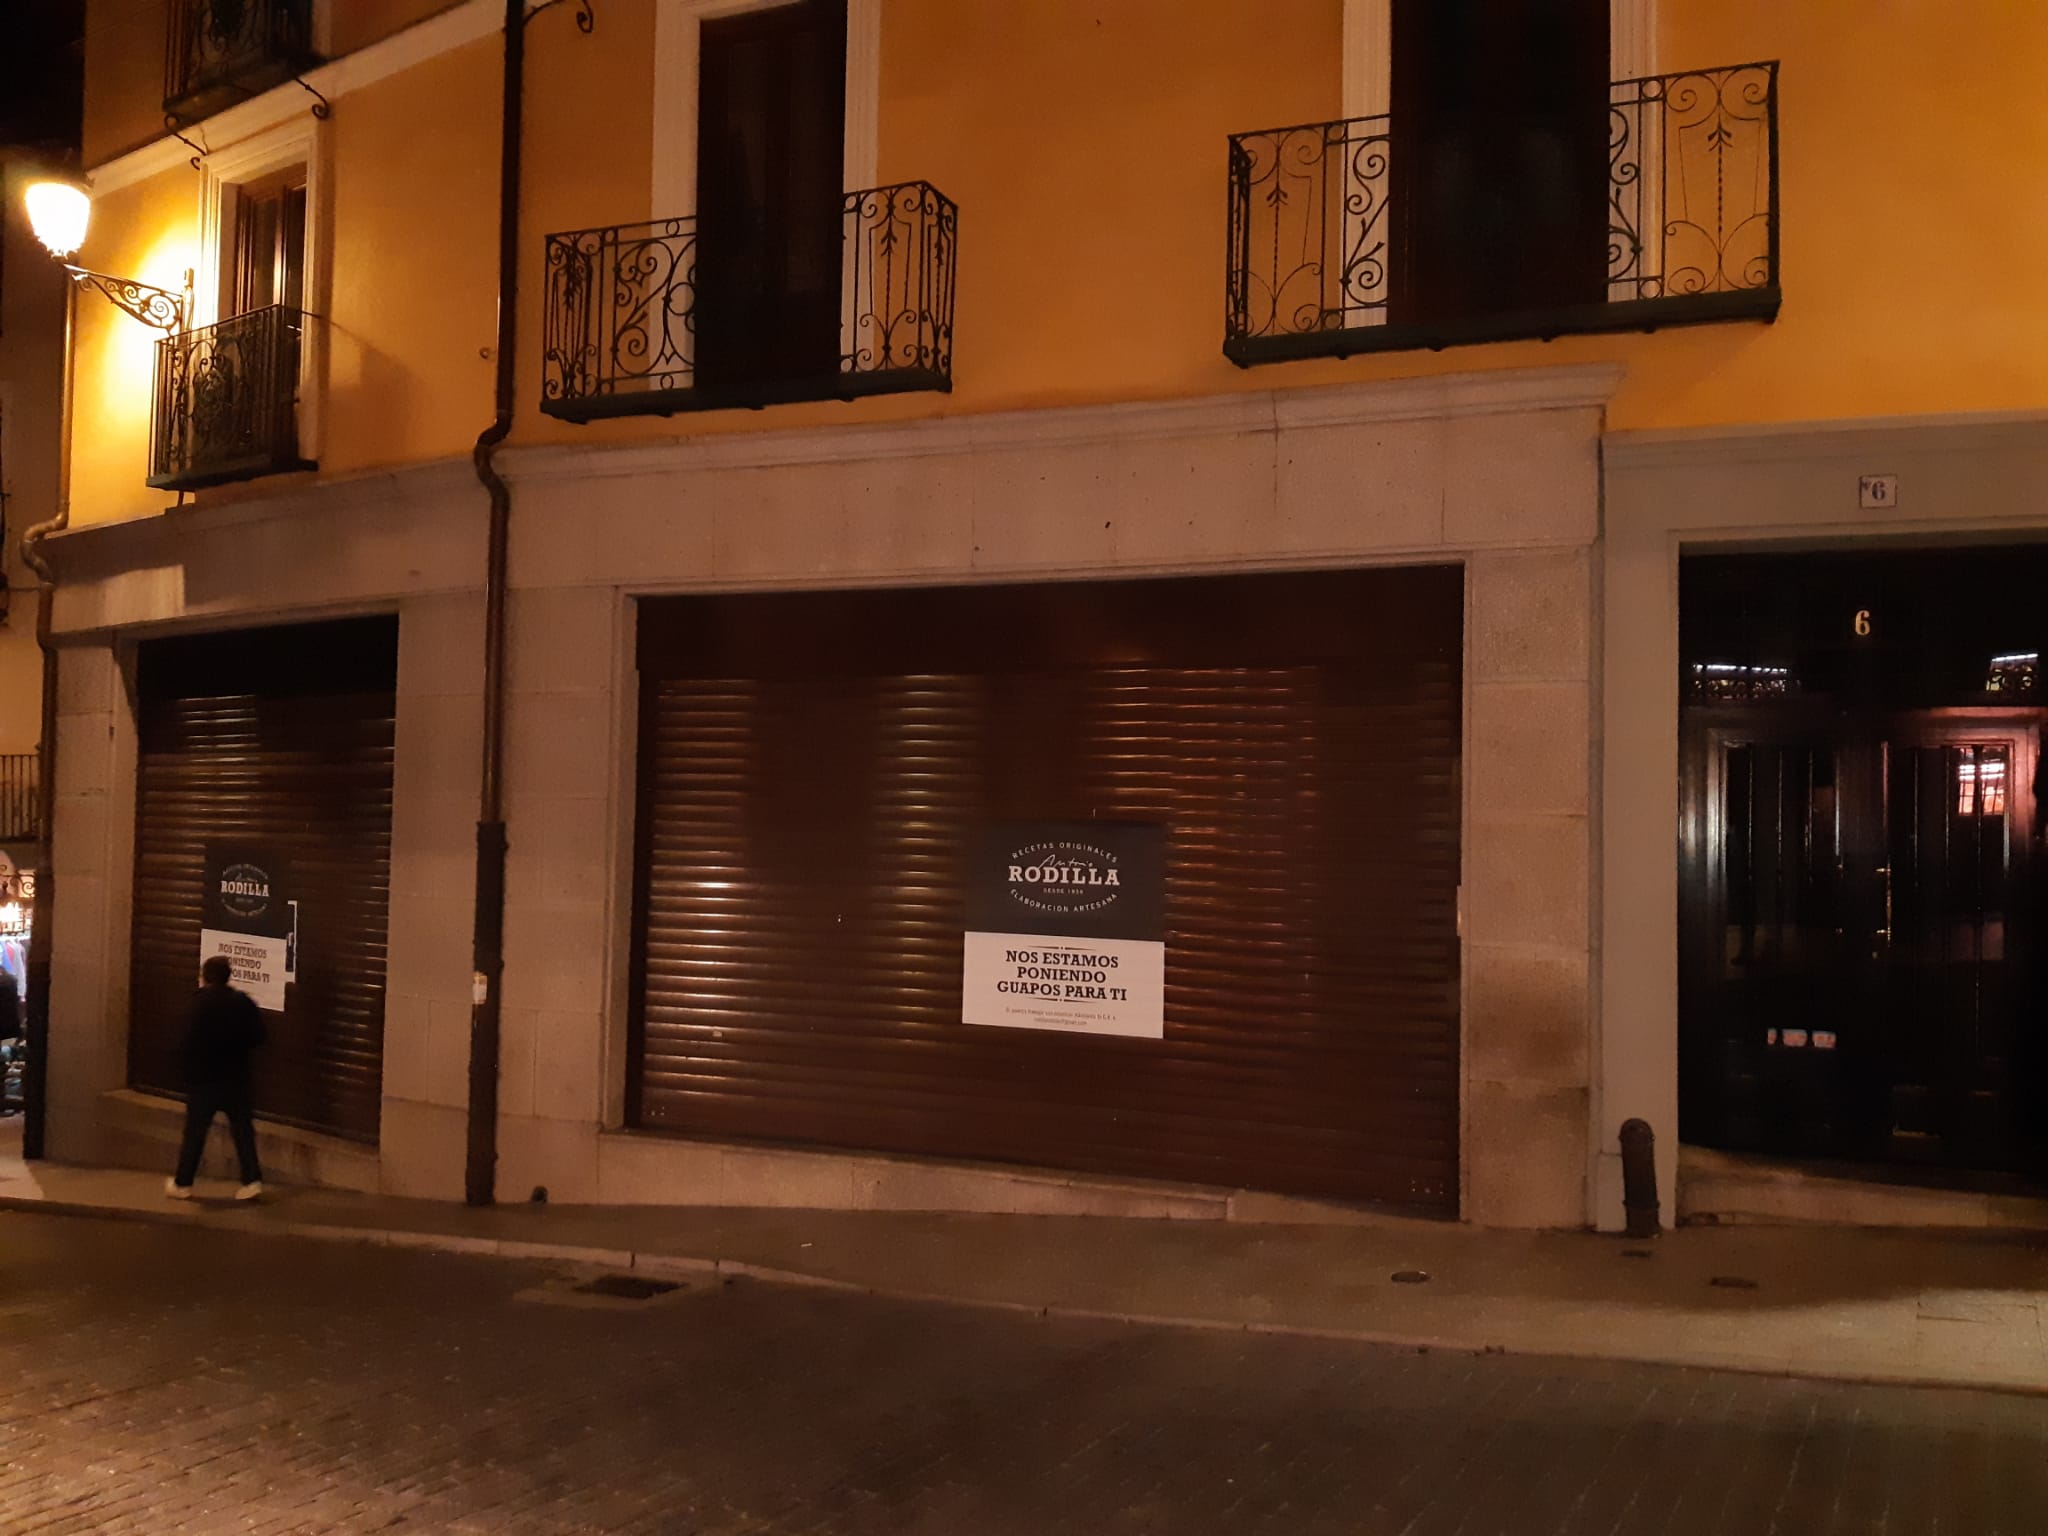 Rodilla abrirá un establecimiento en el casco histórico de Toledo, en concreto en la calle Armas, muy cerca de Zocodover.